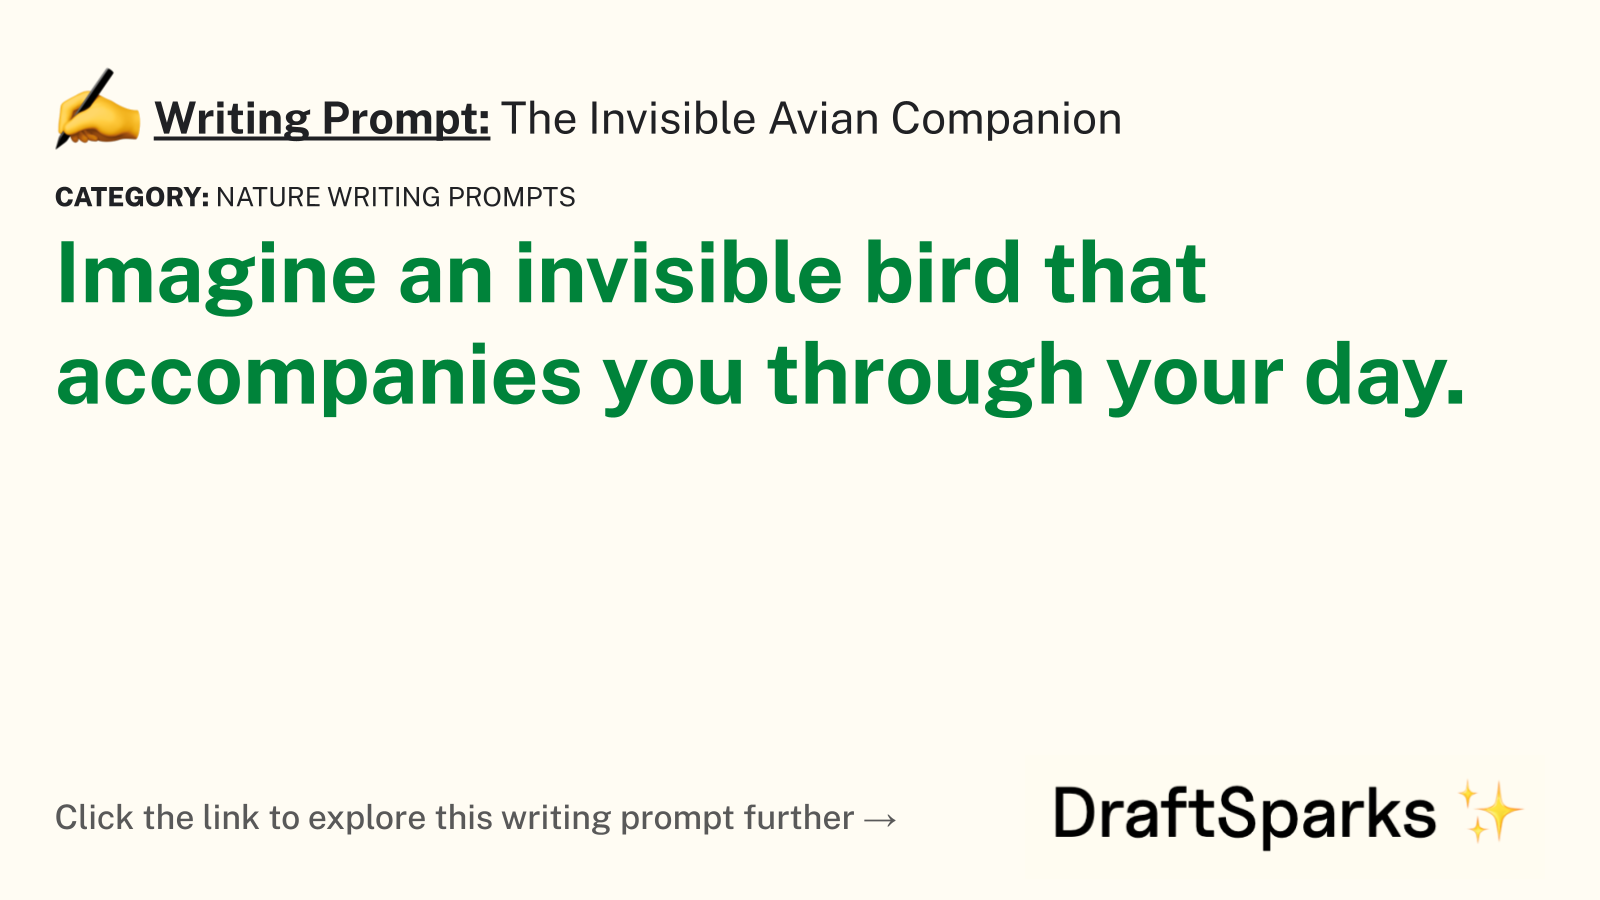 The Invisible Avian Companion